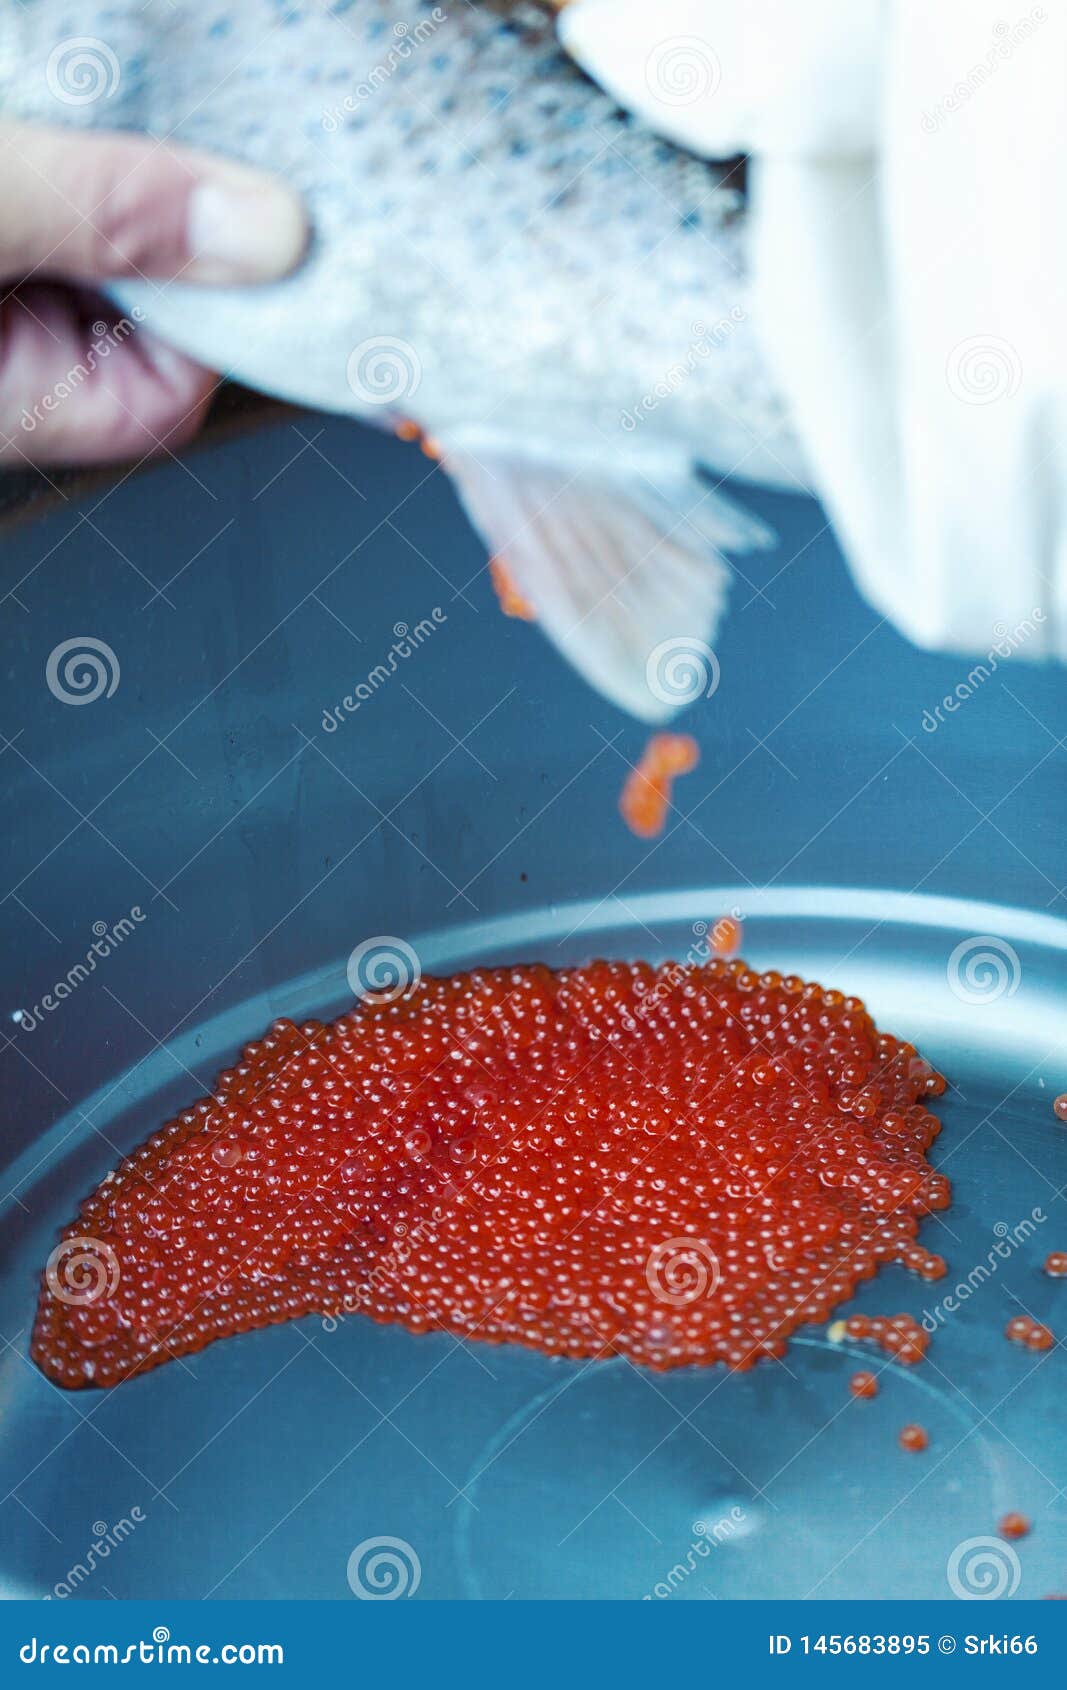 Fish eggs close up stock image. Image of caviare, delicacy - 145683895